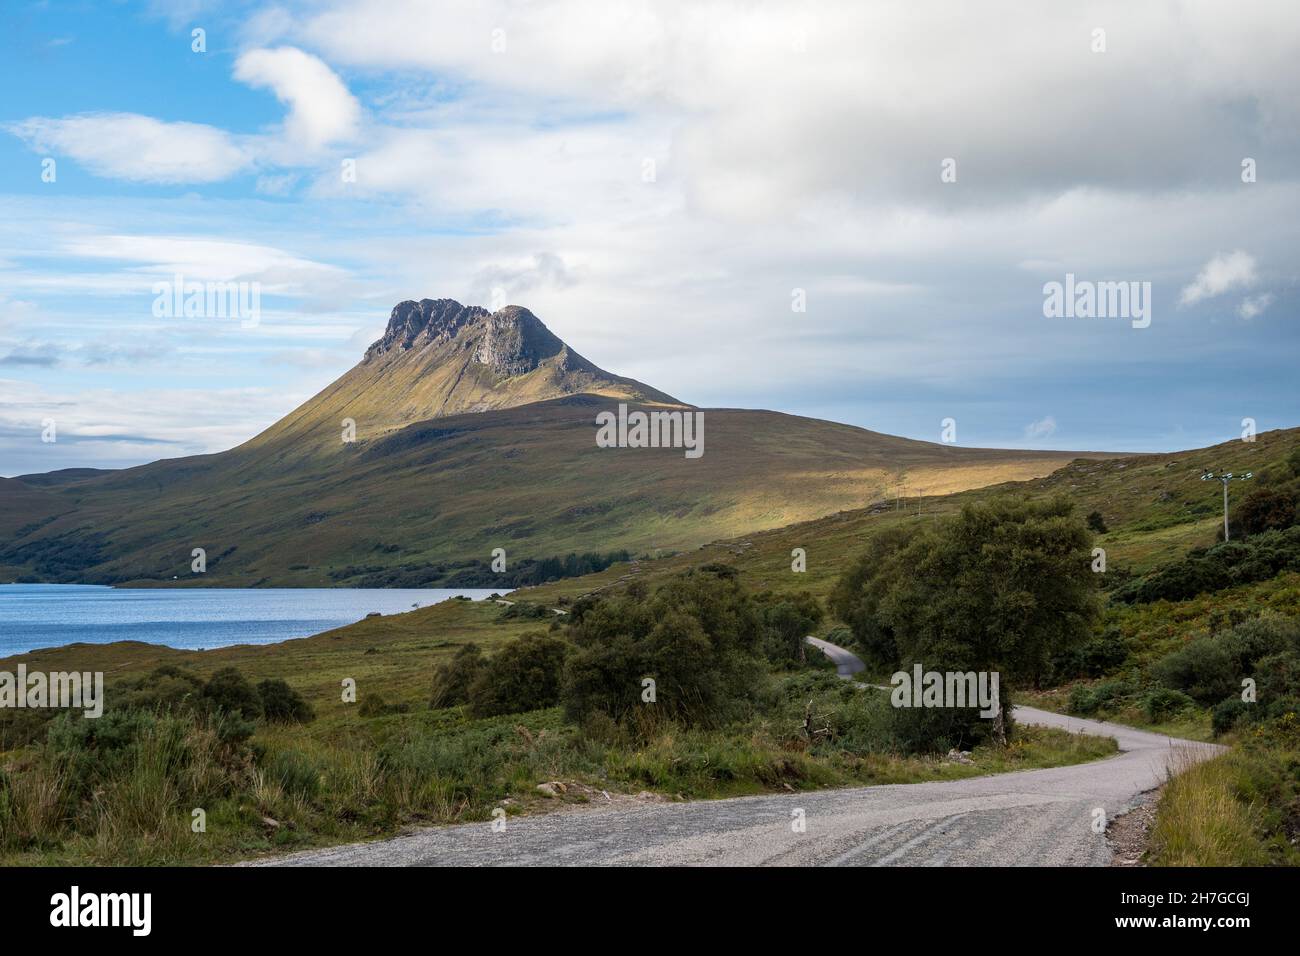 Regno Unito, Scozia, Highlands, Wester Ross, Strathpeffer e Lochalsh. STAC Pollaidh montagna sulla penisola di Coigach vicino Ullapool. Foto Stock